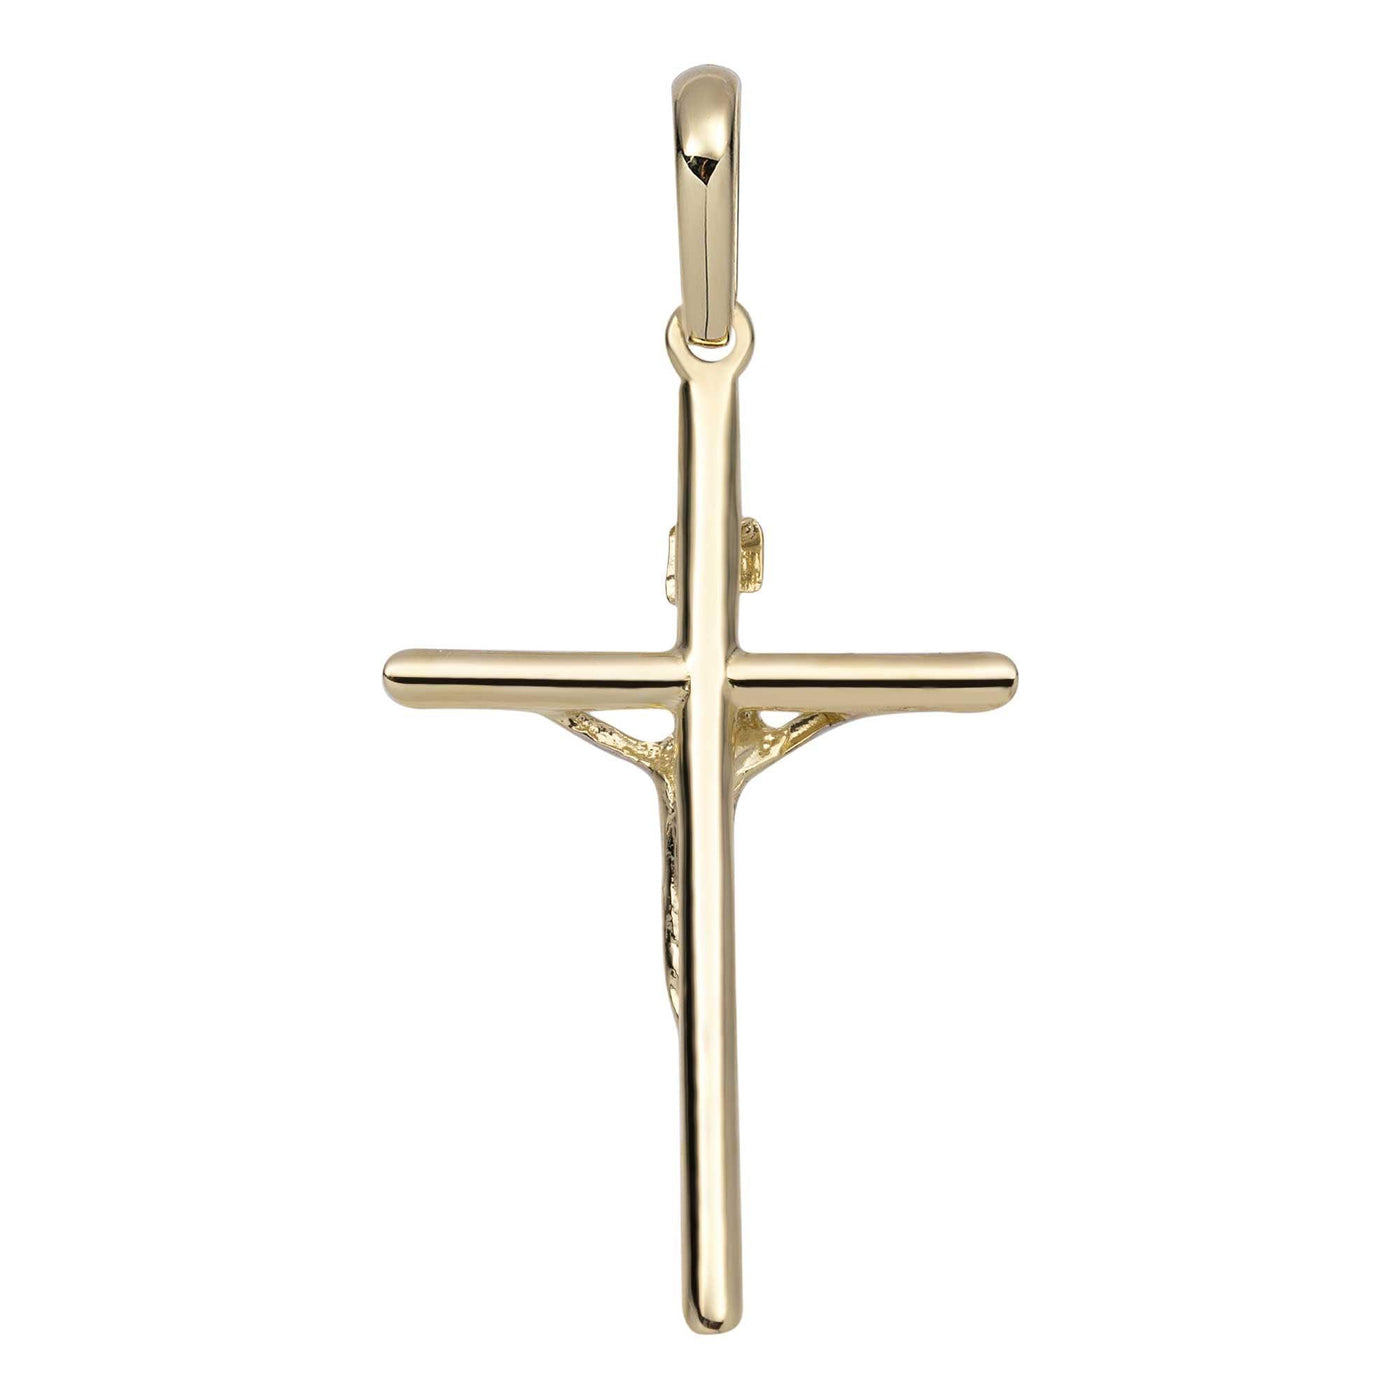 2" Shiny INRI Jesus Cross Crucifix Pendant 14K Yellow Gold - bayamjewelry